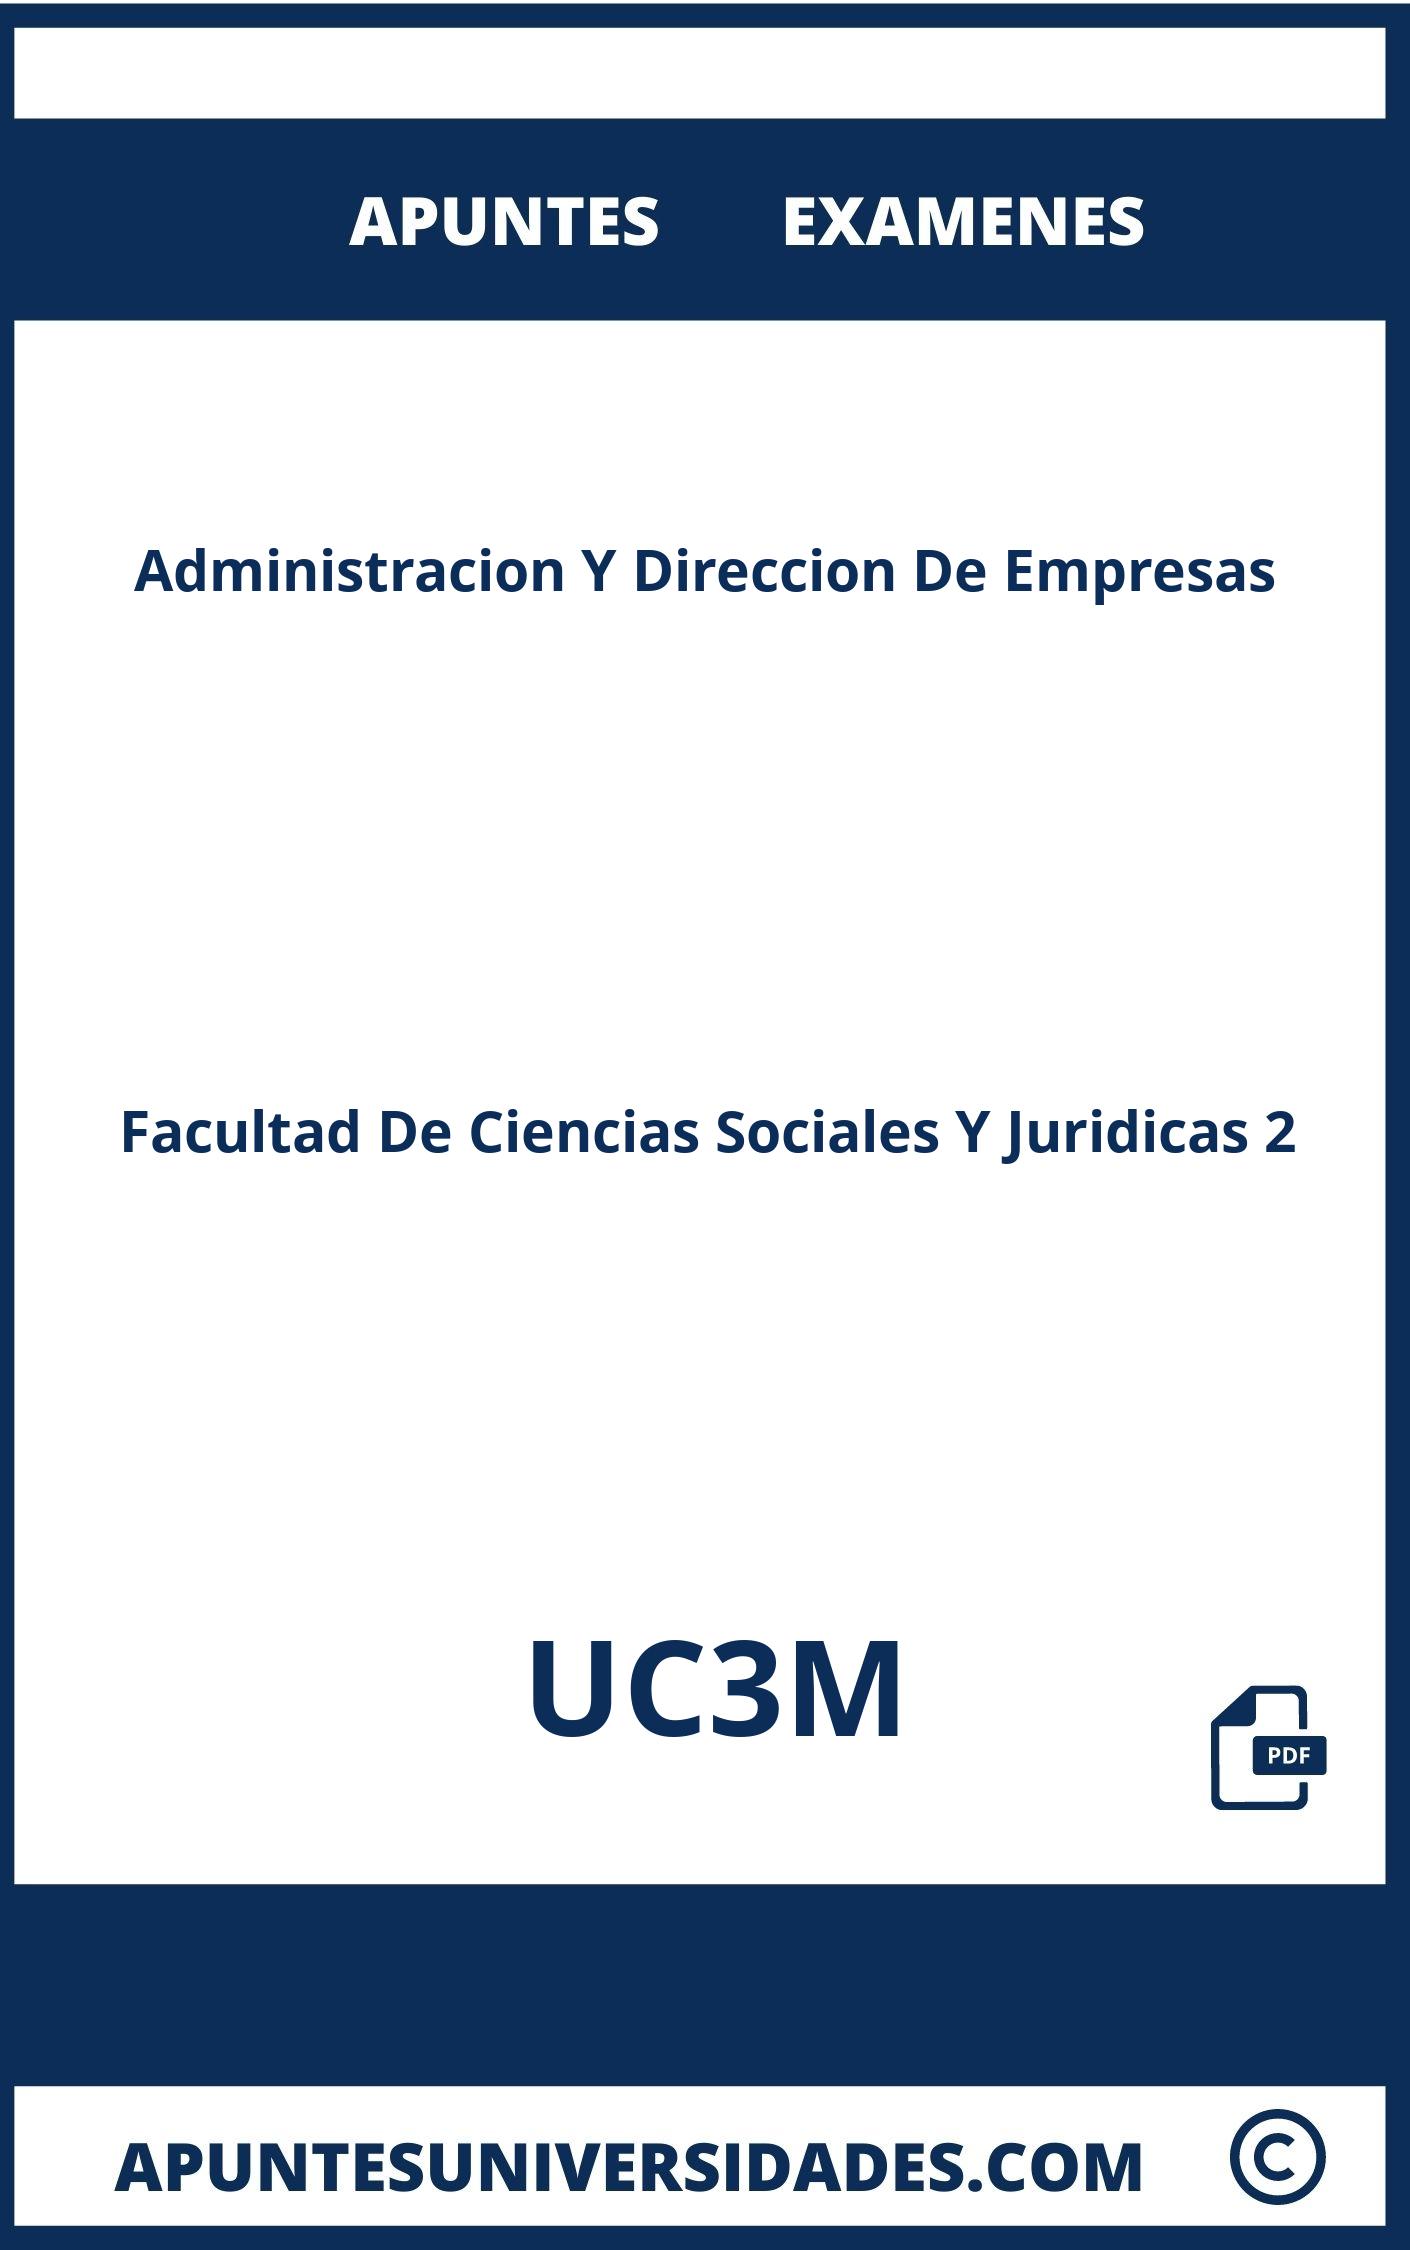 Administracion Y Direccion De Empresas UC3M Examenes Apuntes